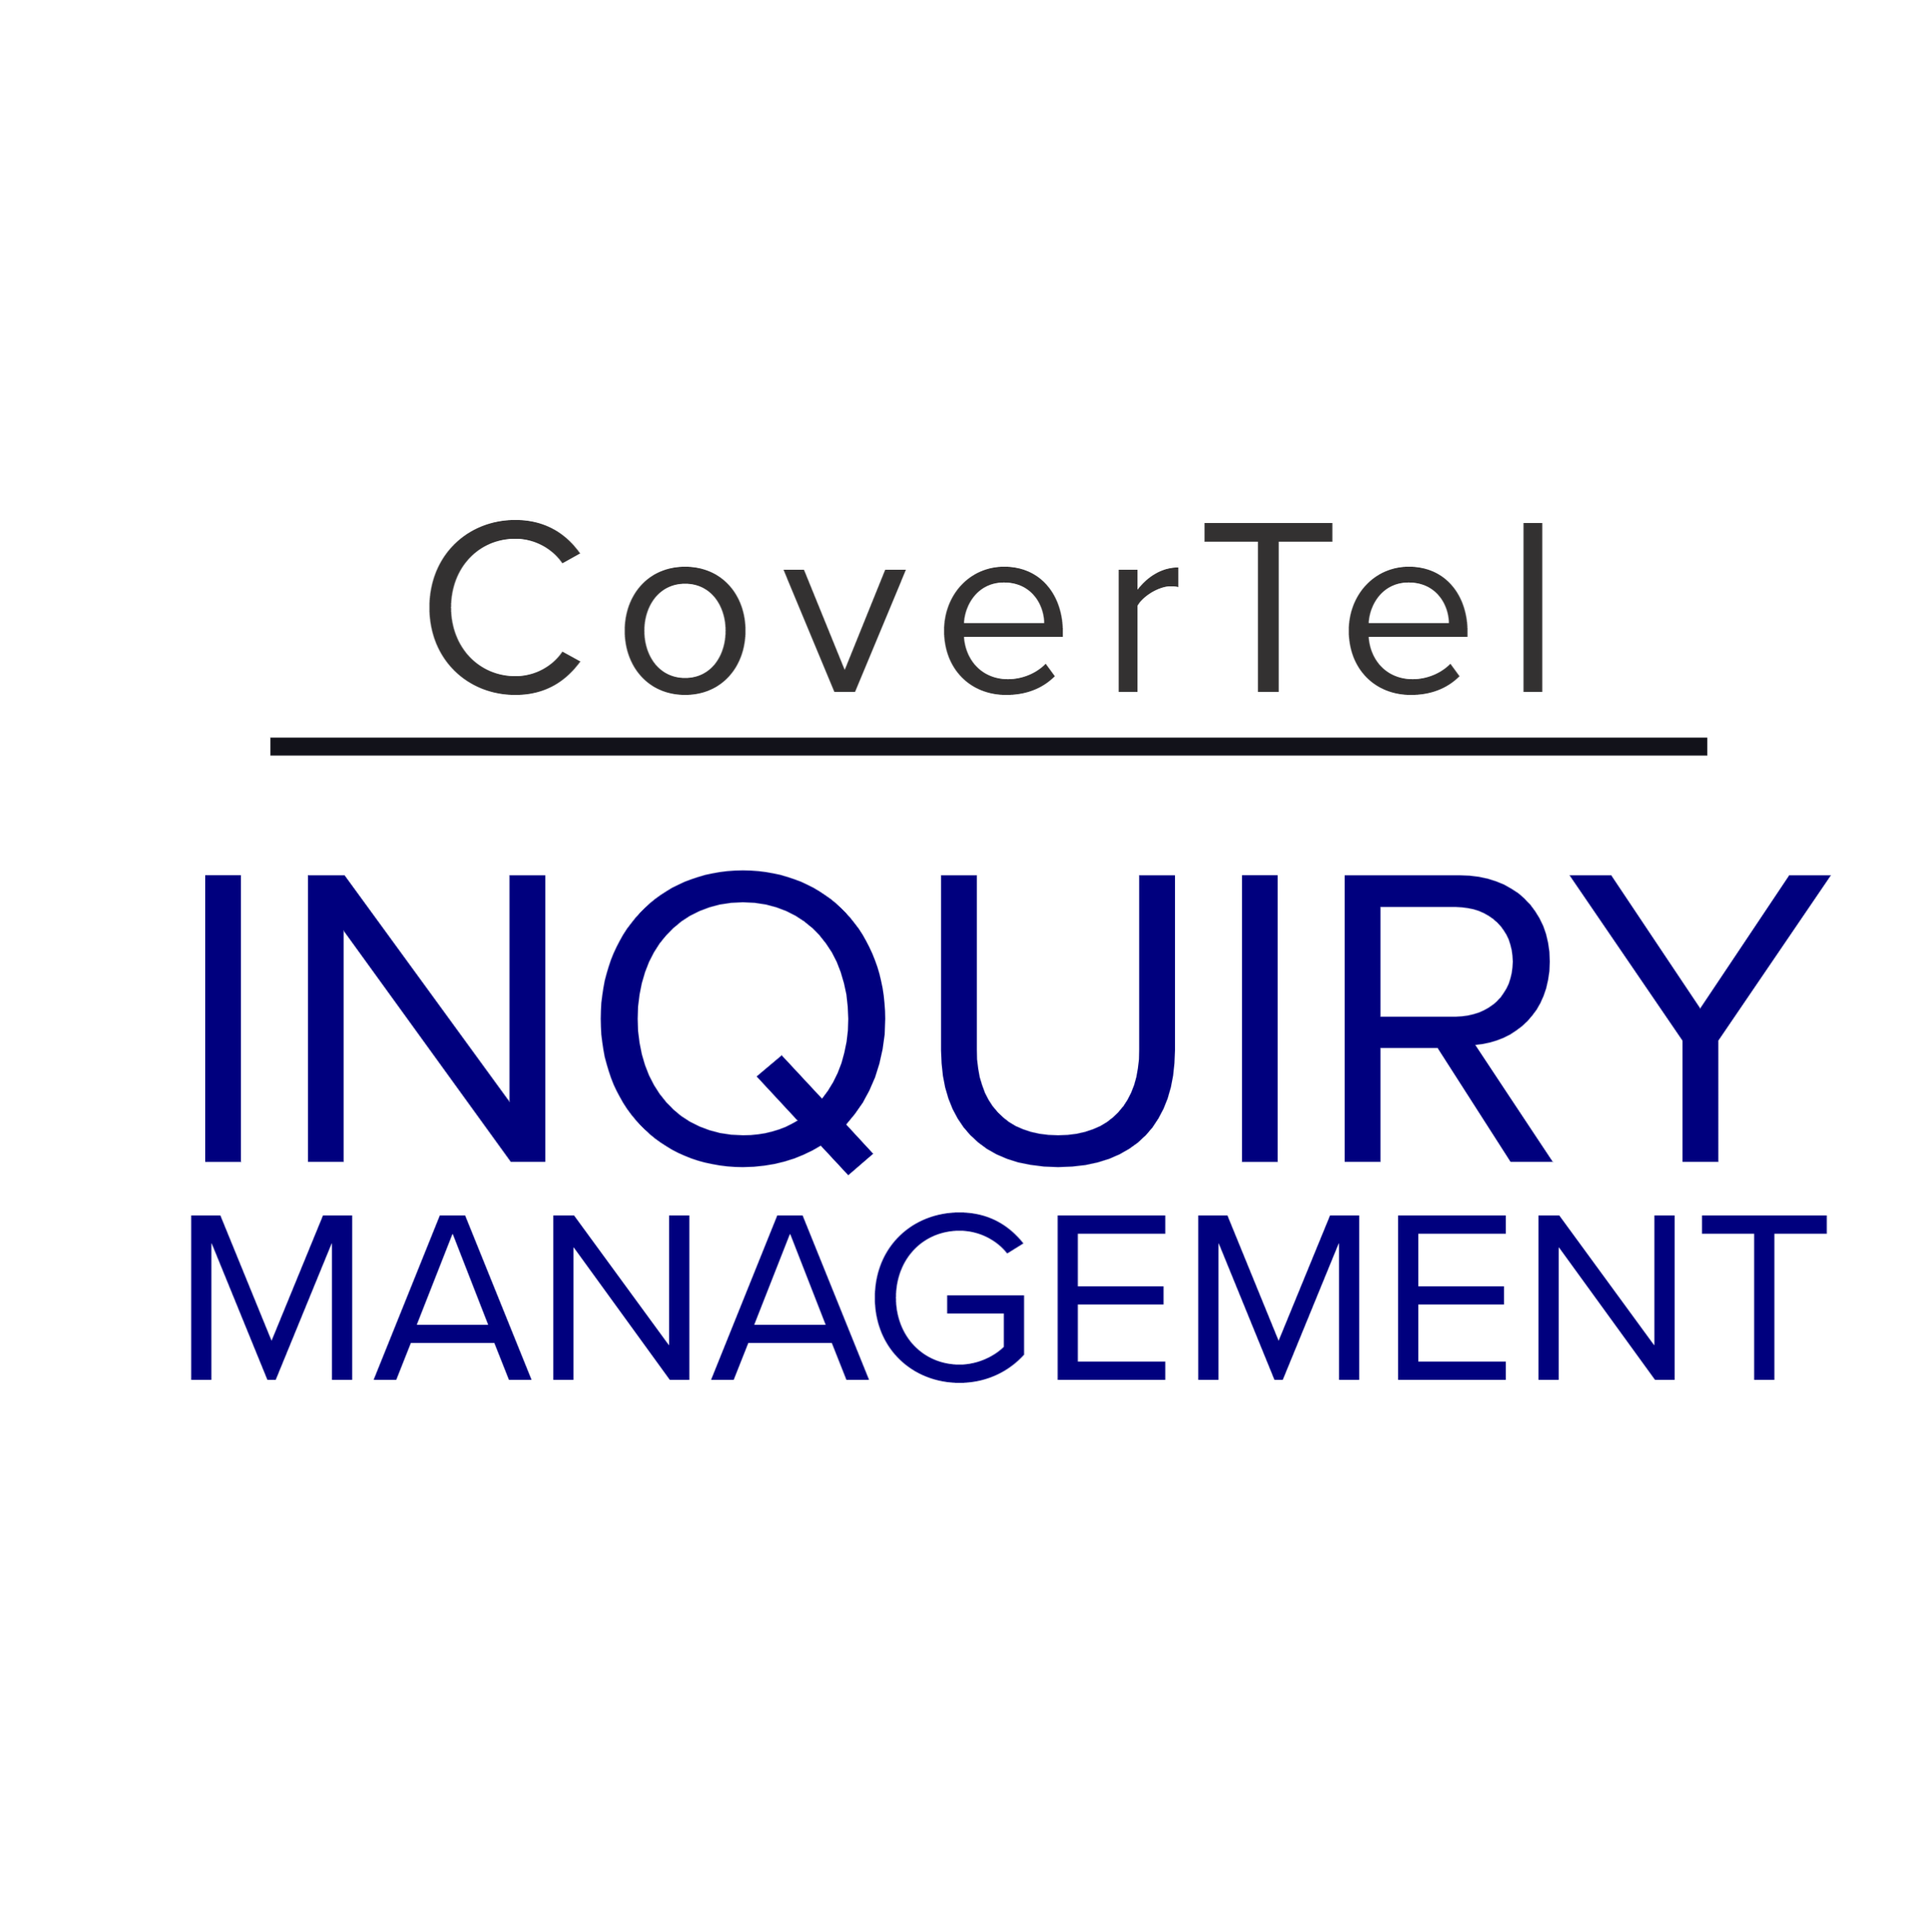 CoverTel Inquiry Management